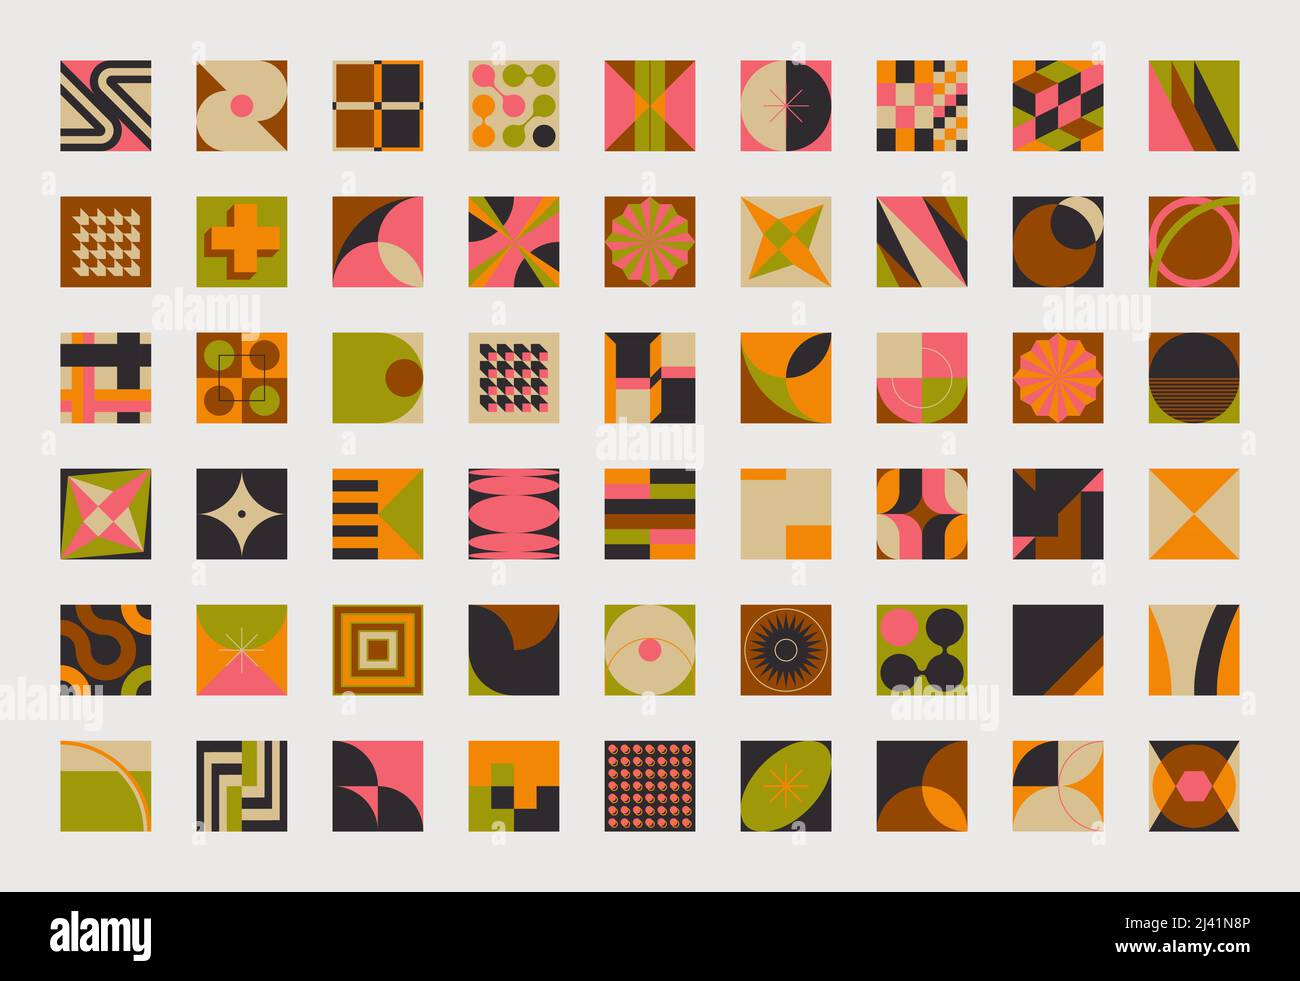 Moderna collezione di forme vettoriali astratte di varie forme geometriche semplici ed elementi grafici colorati per poster, copertina, arte, presentazione, stampe Illustrazione Vettoriale